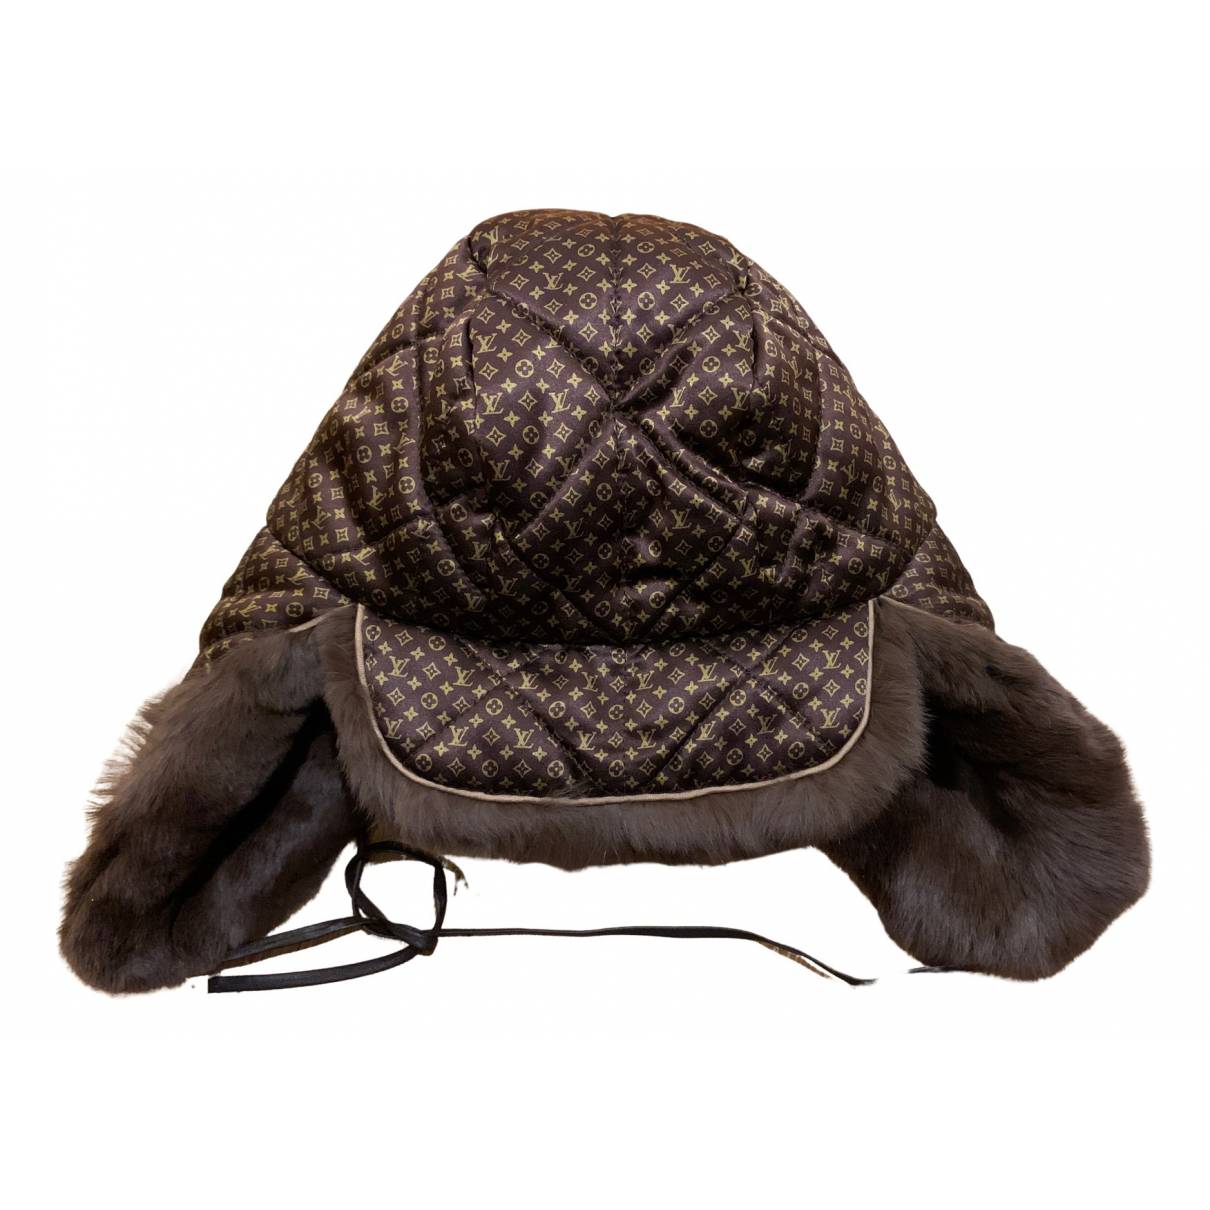 Rabbit hat Louis Vuitton Grey size L International in Rabbit - 14795391